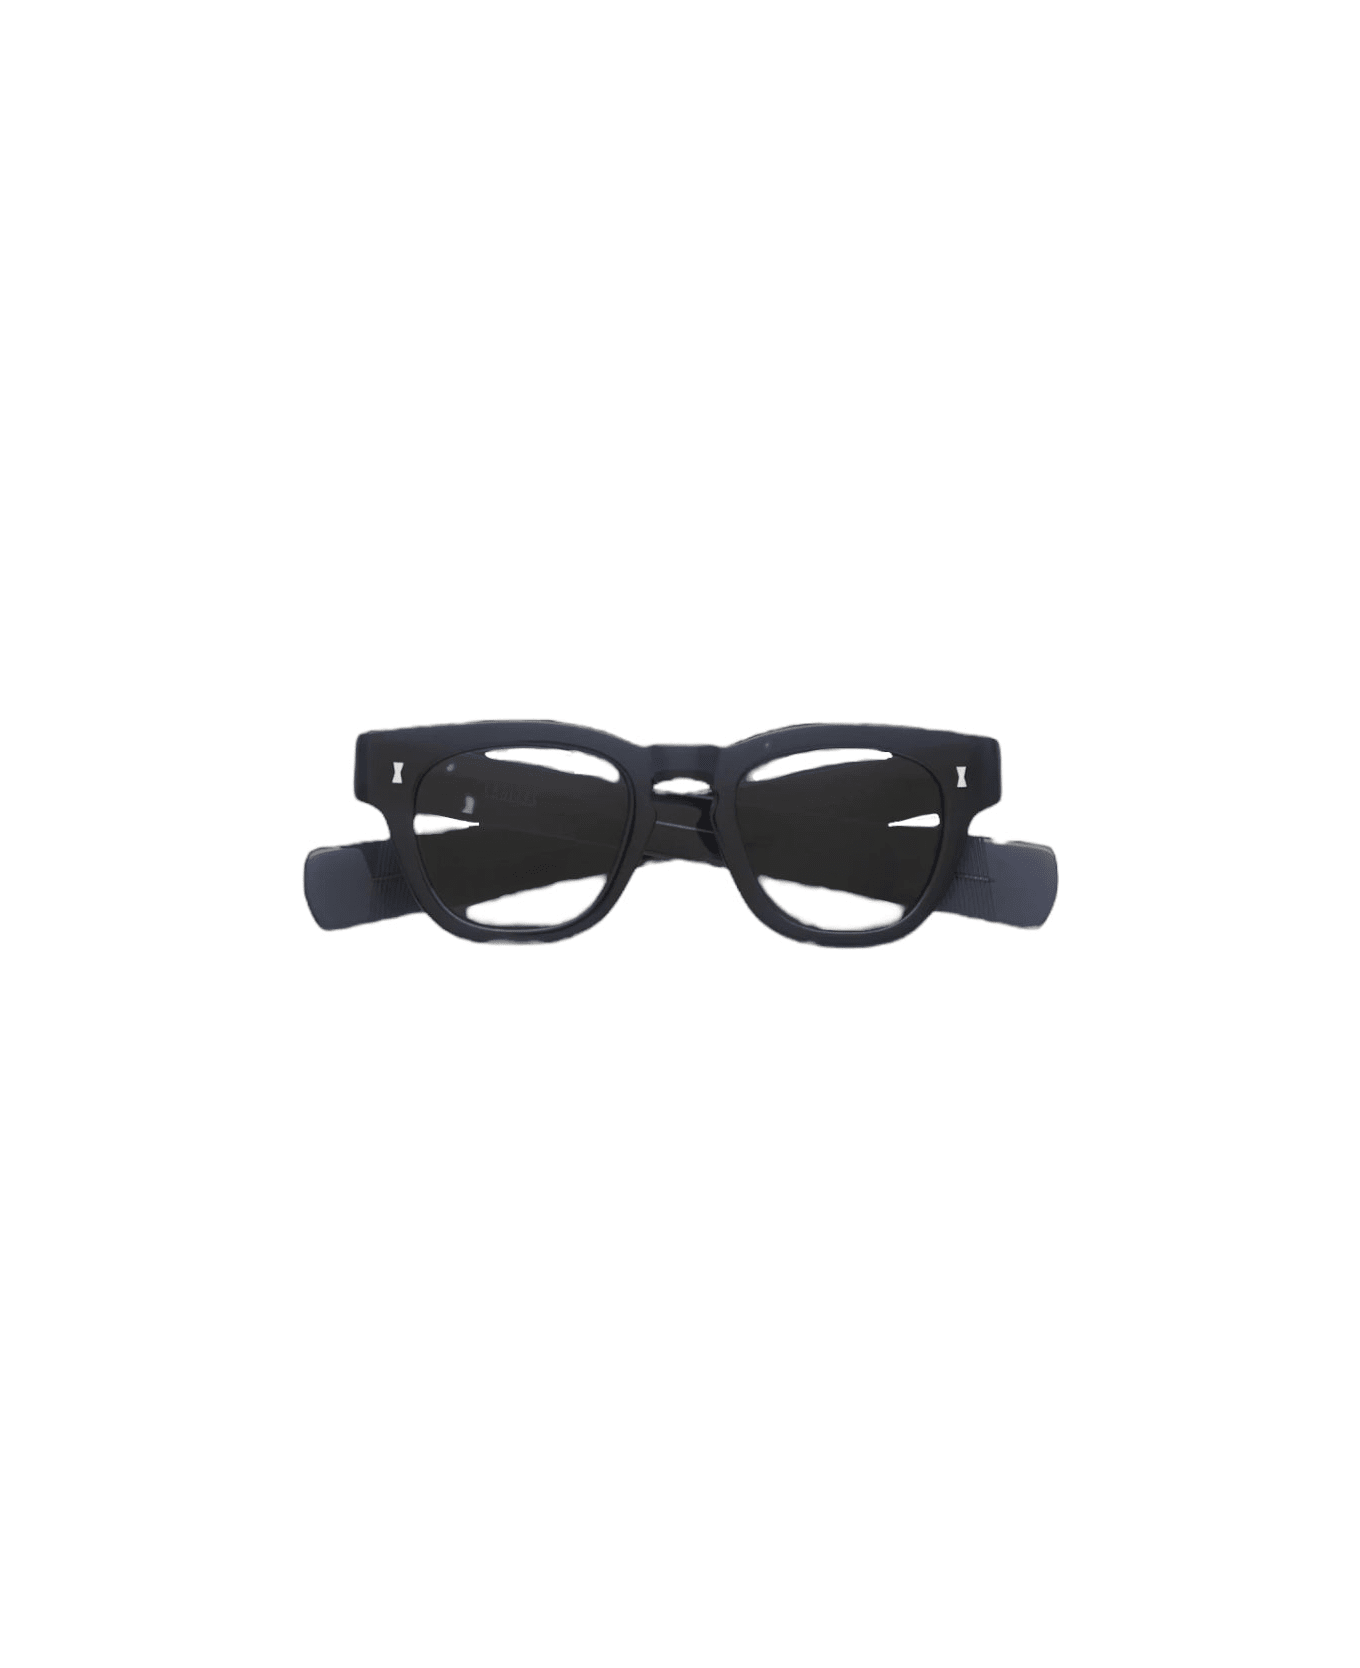 Cubitts Cruishank - Blue Glasses アイウェア